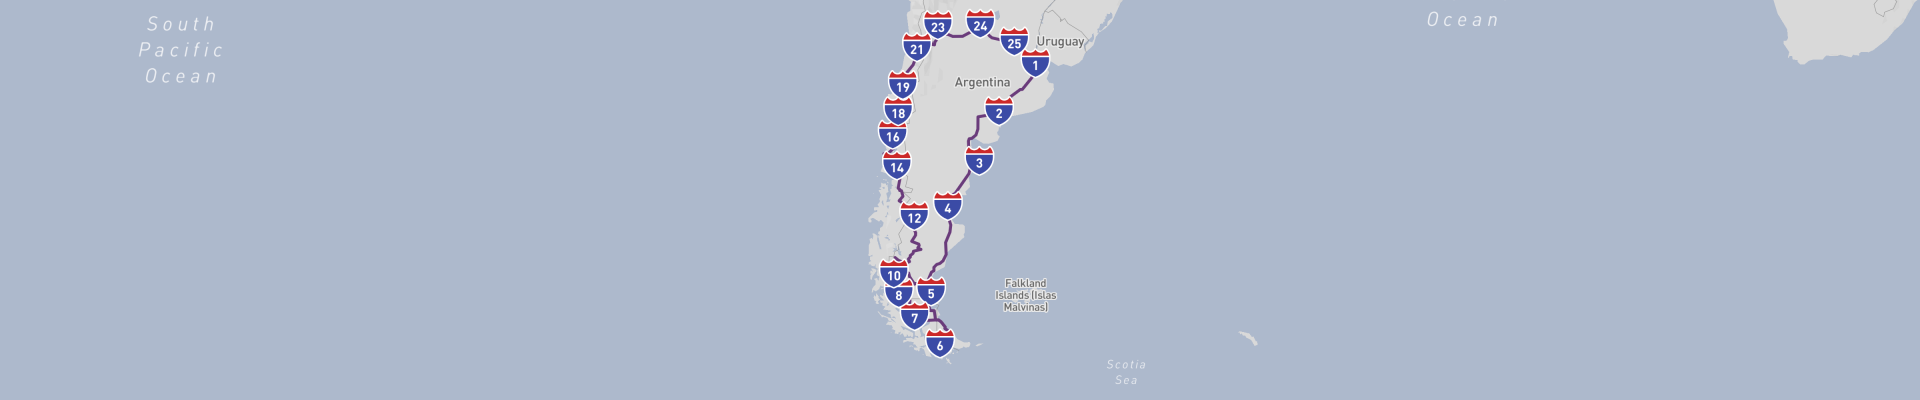 阿根廷-智利大旅行